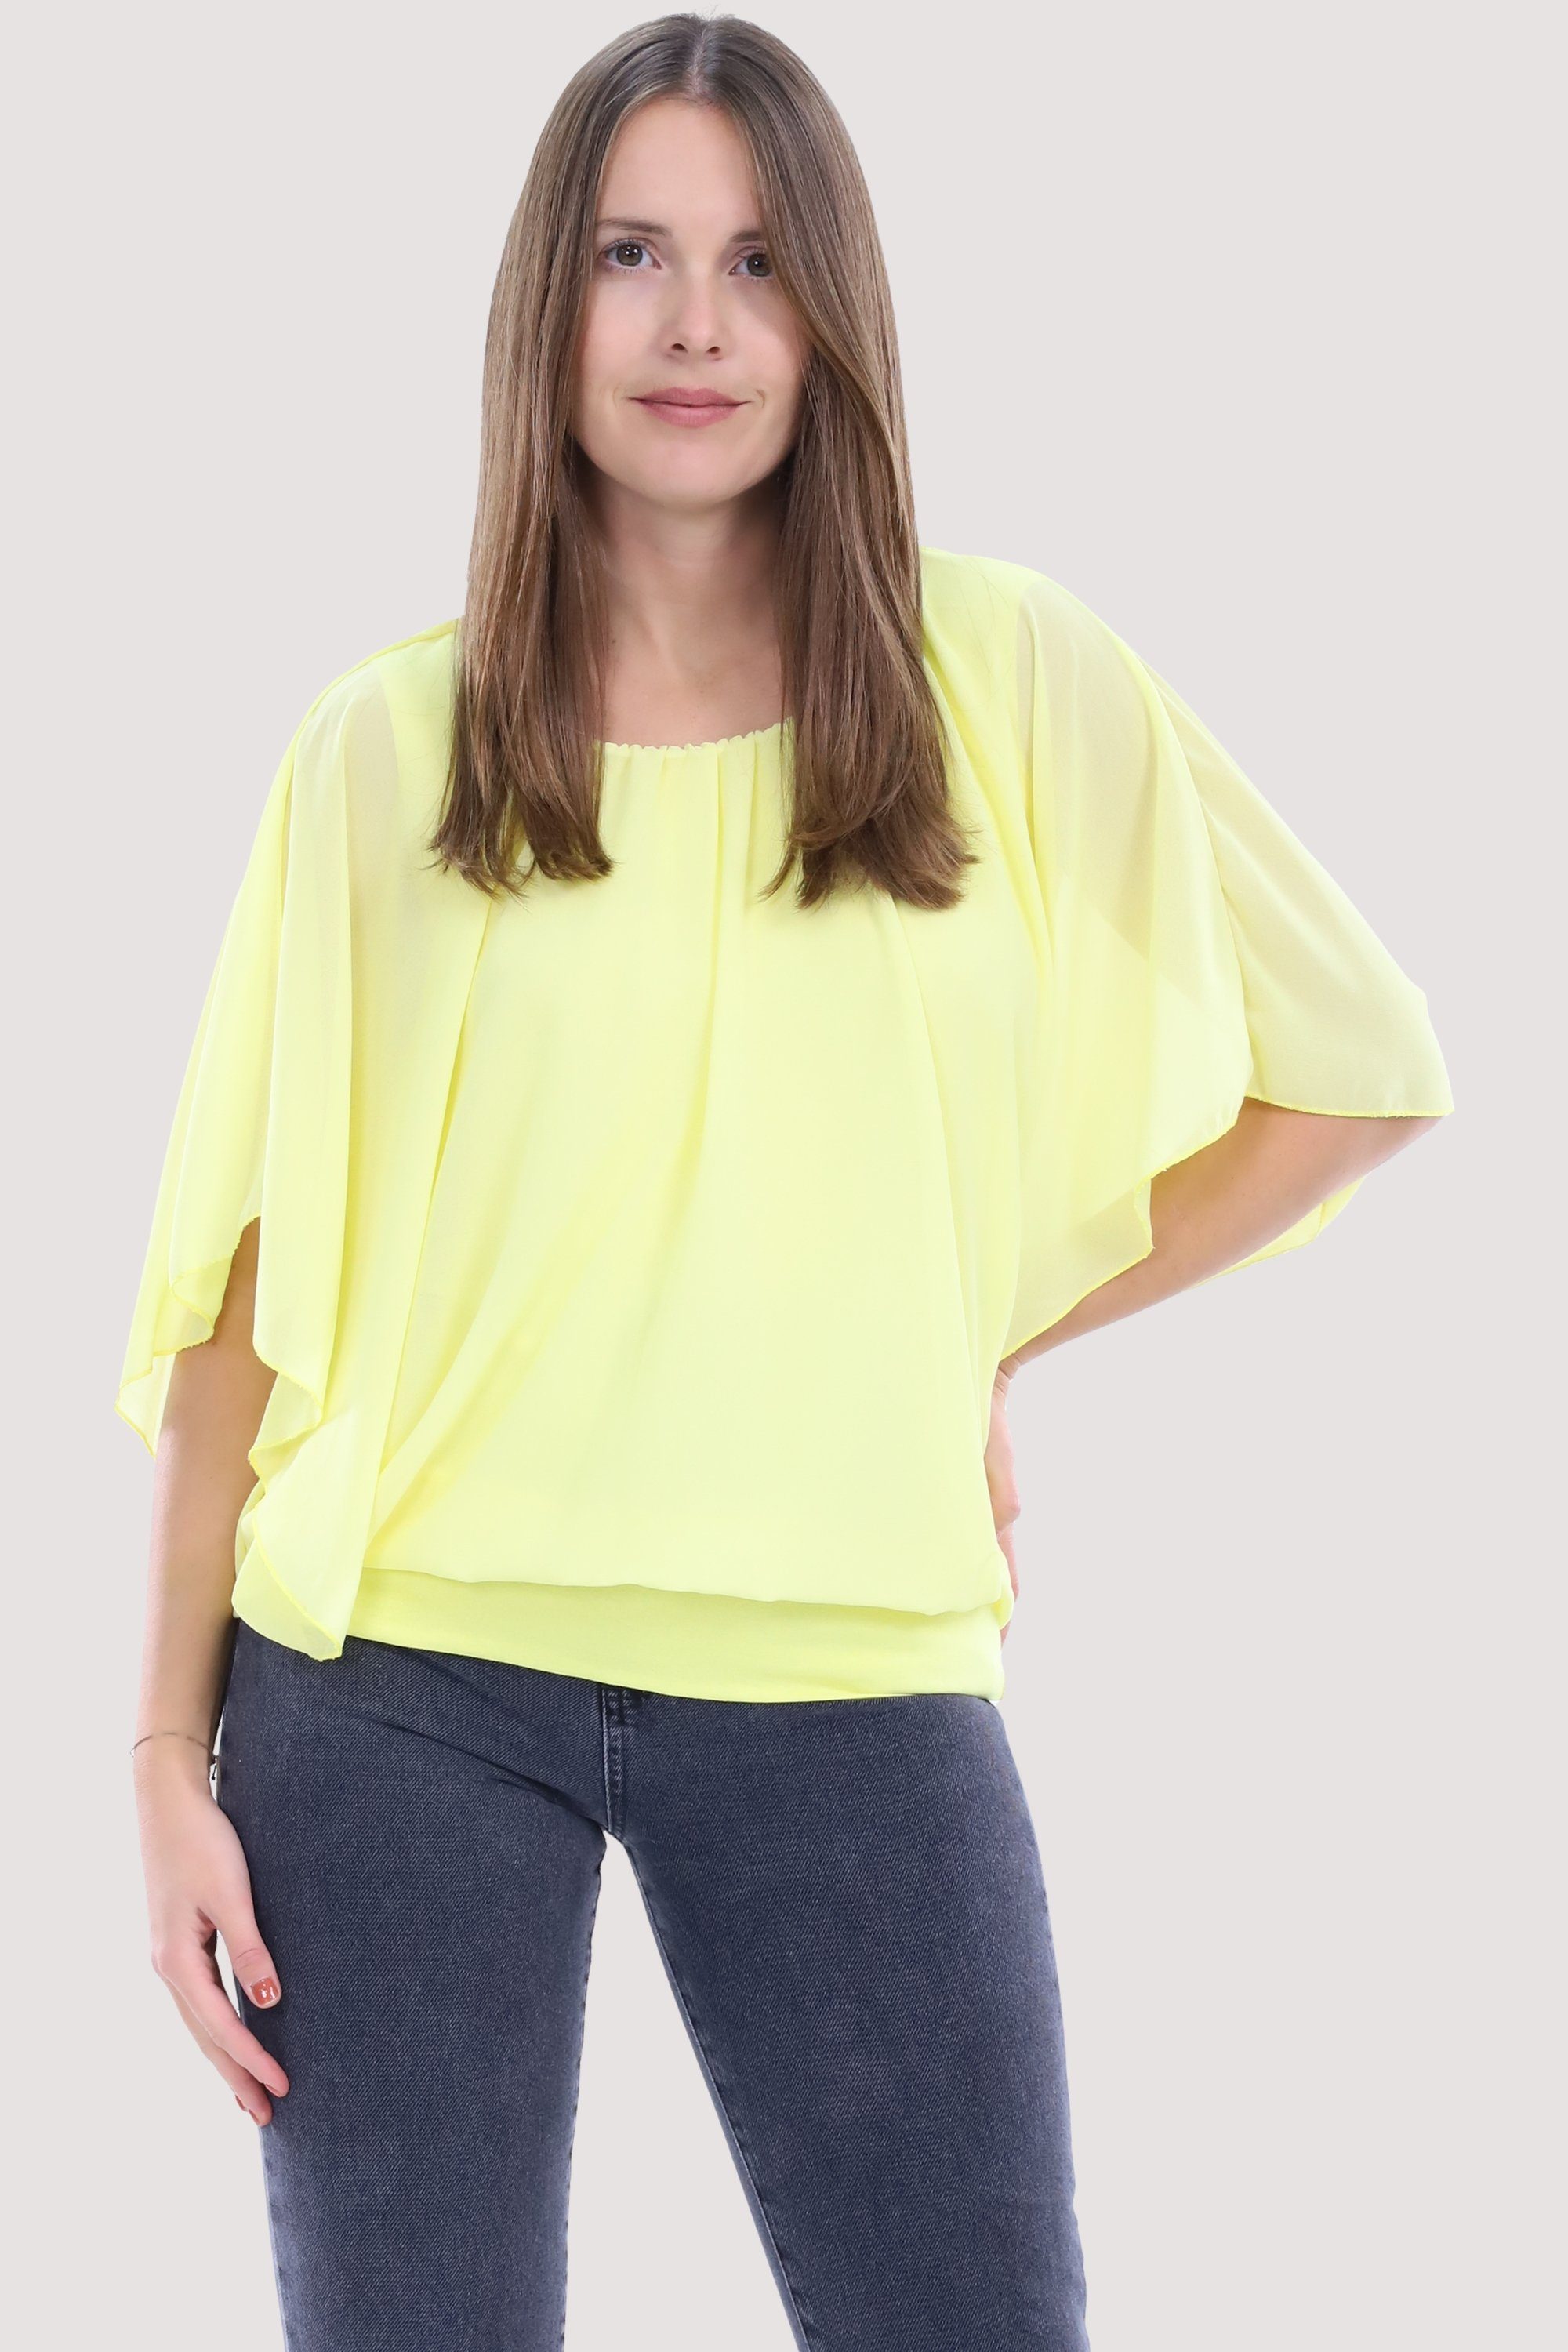 Chiffonbluse more gelb than Bund malito fashion mit 6296 breitem Einheitsgröße